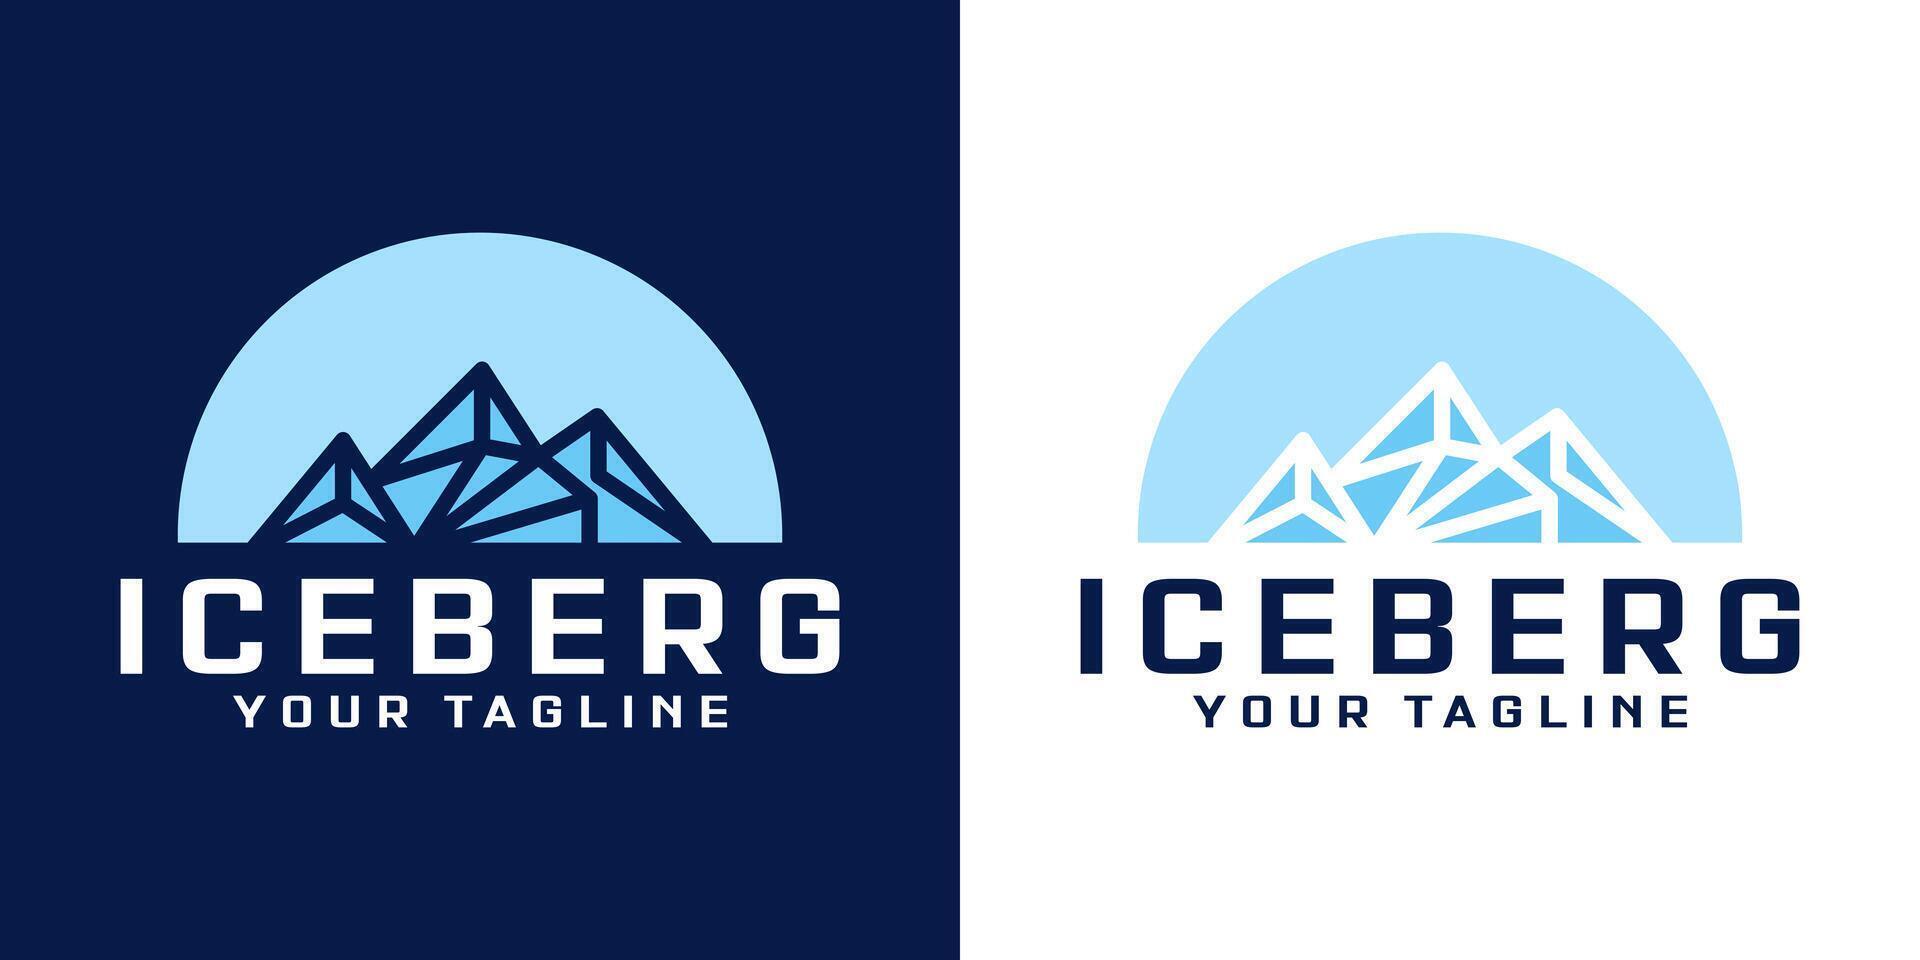 silueta de iceberg rock logo diseño vector